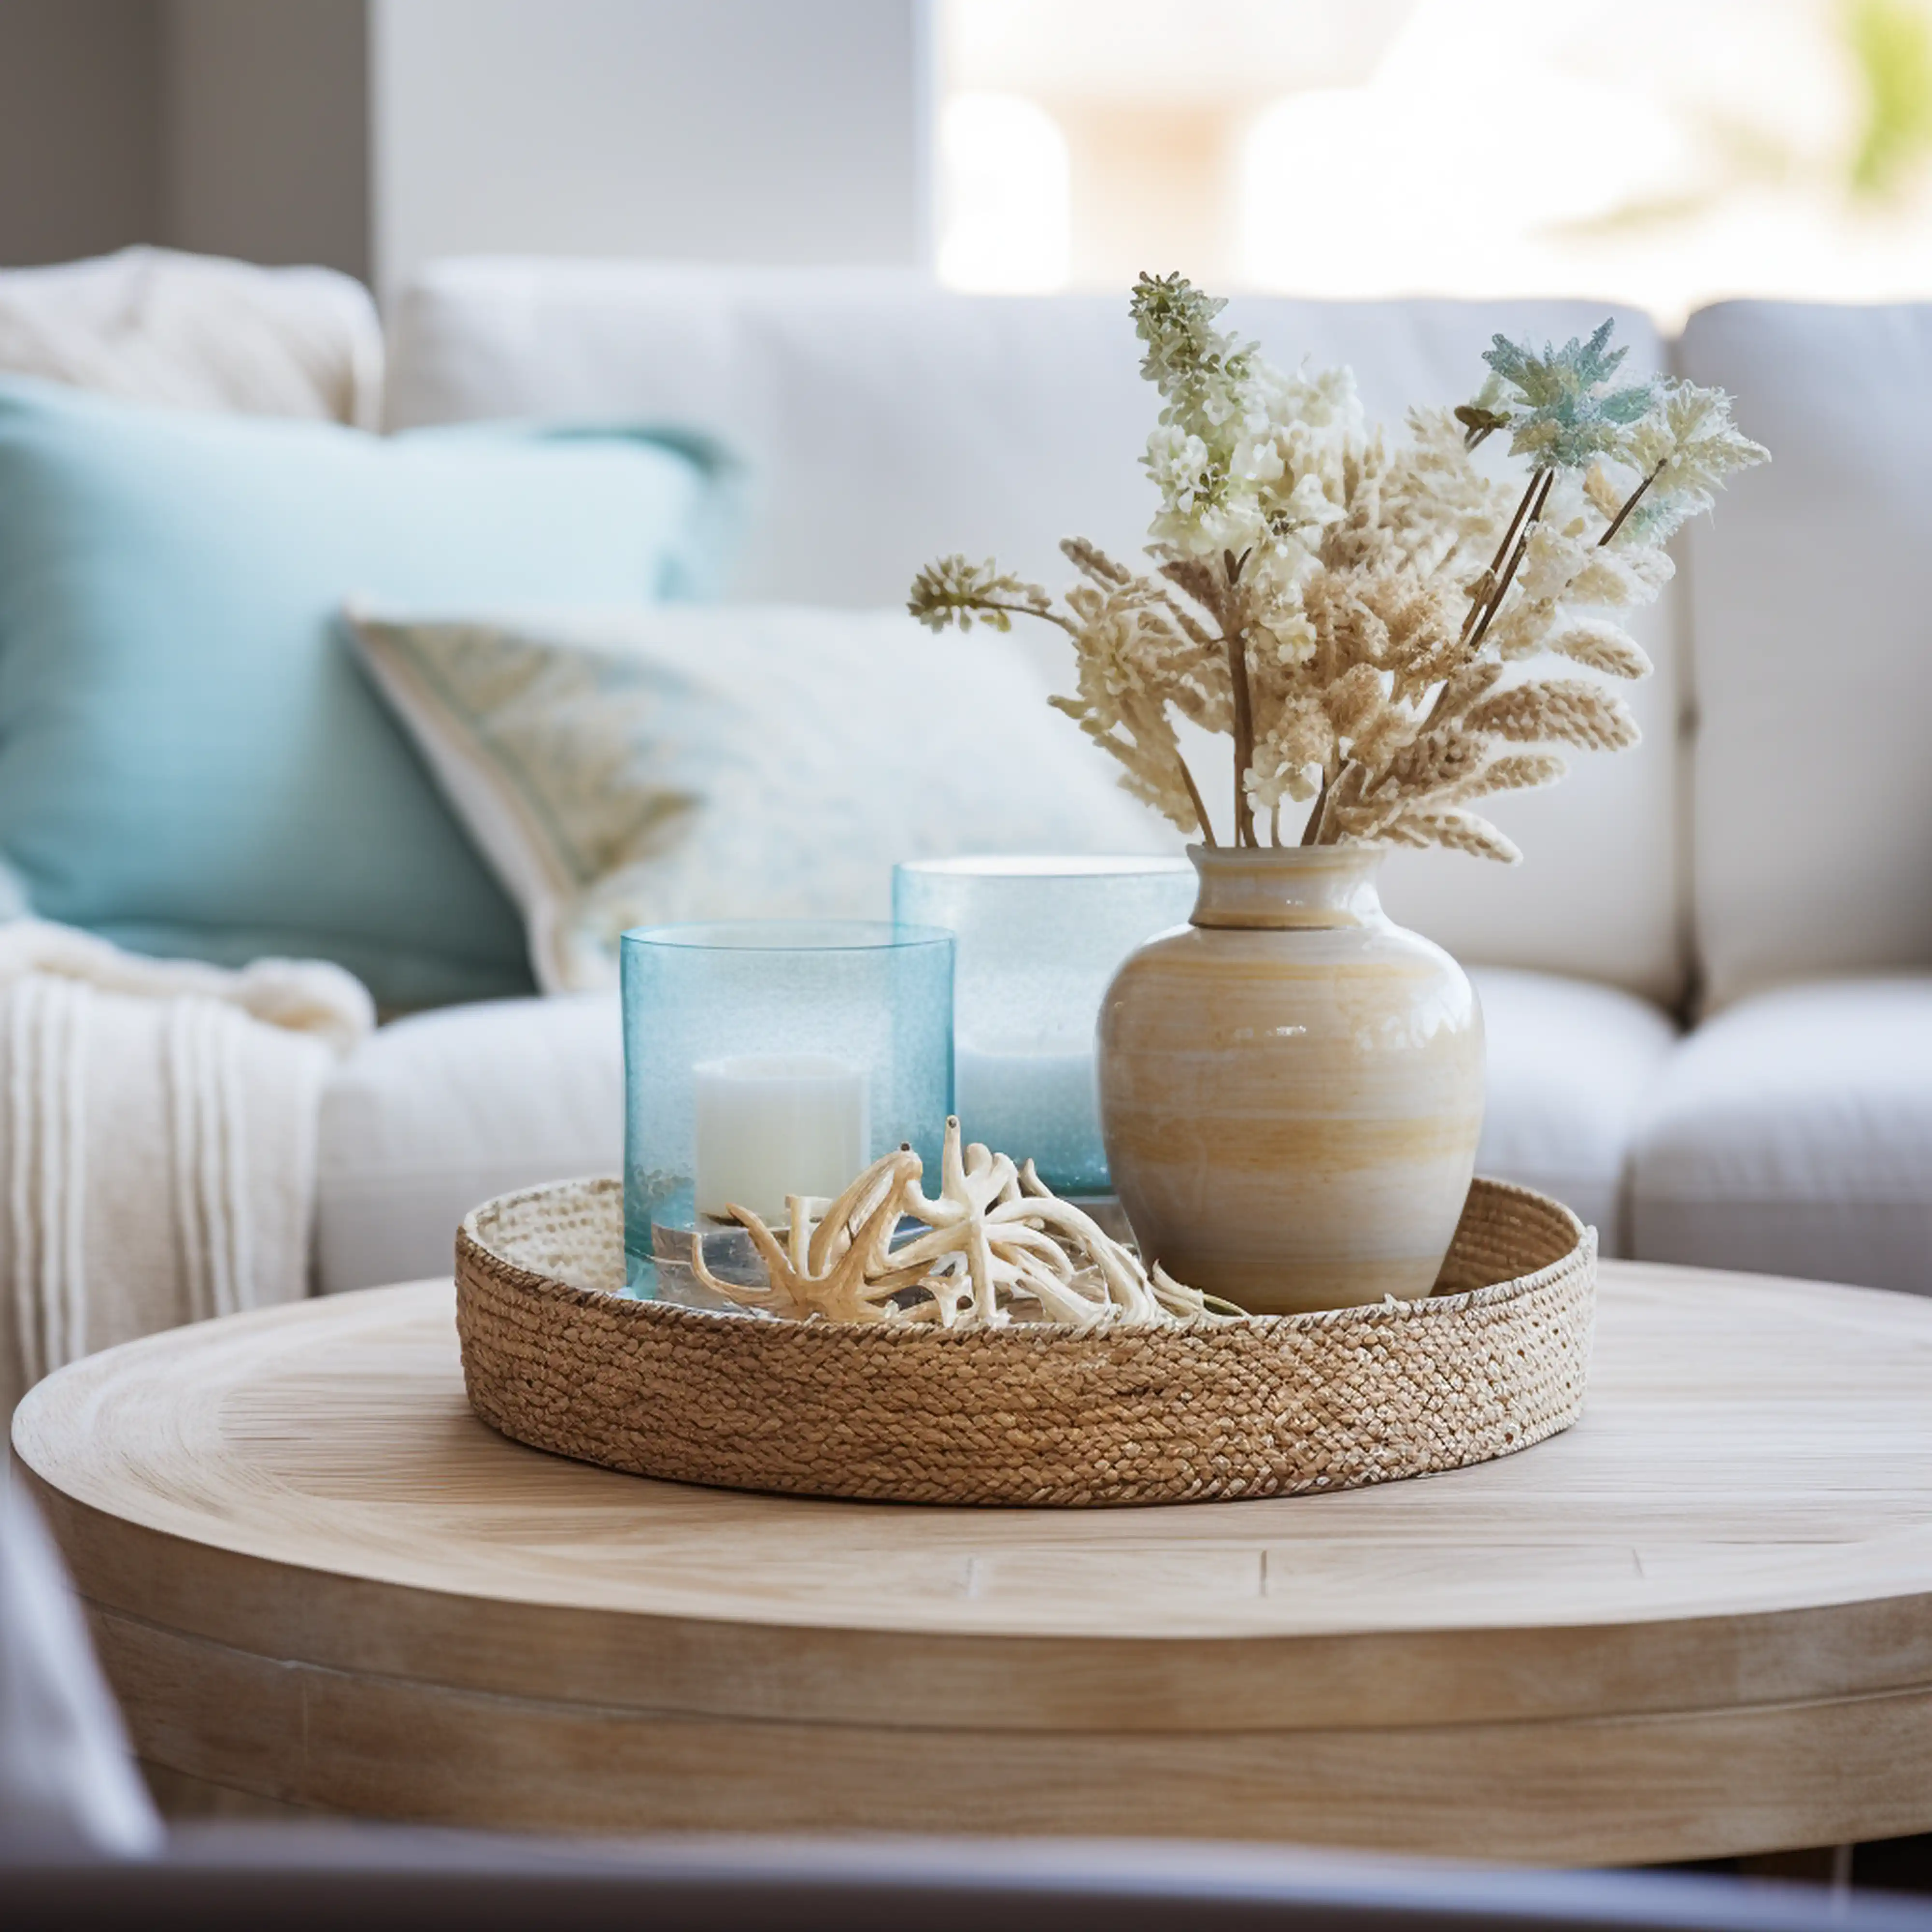 Coin salon confortable avec décoration de style plage, incluant un vase avec des fleurs séchées sur une table ronde, intérieur signé Sarah Brown Design